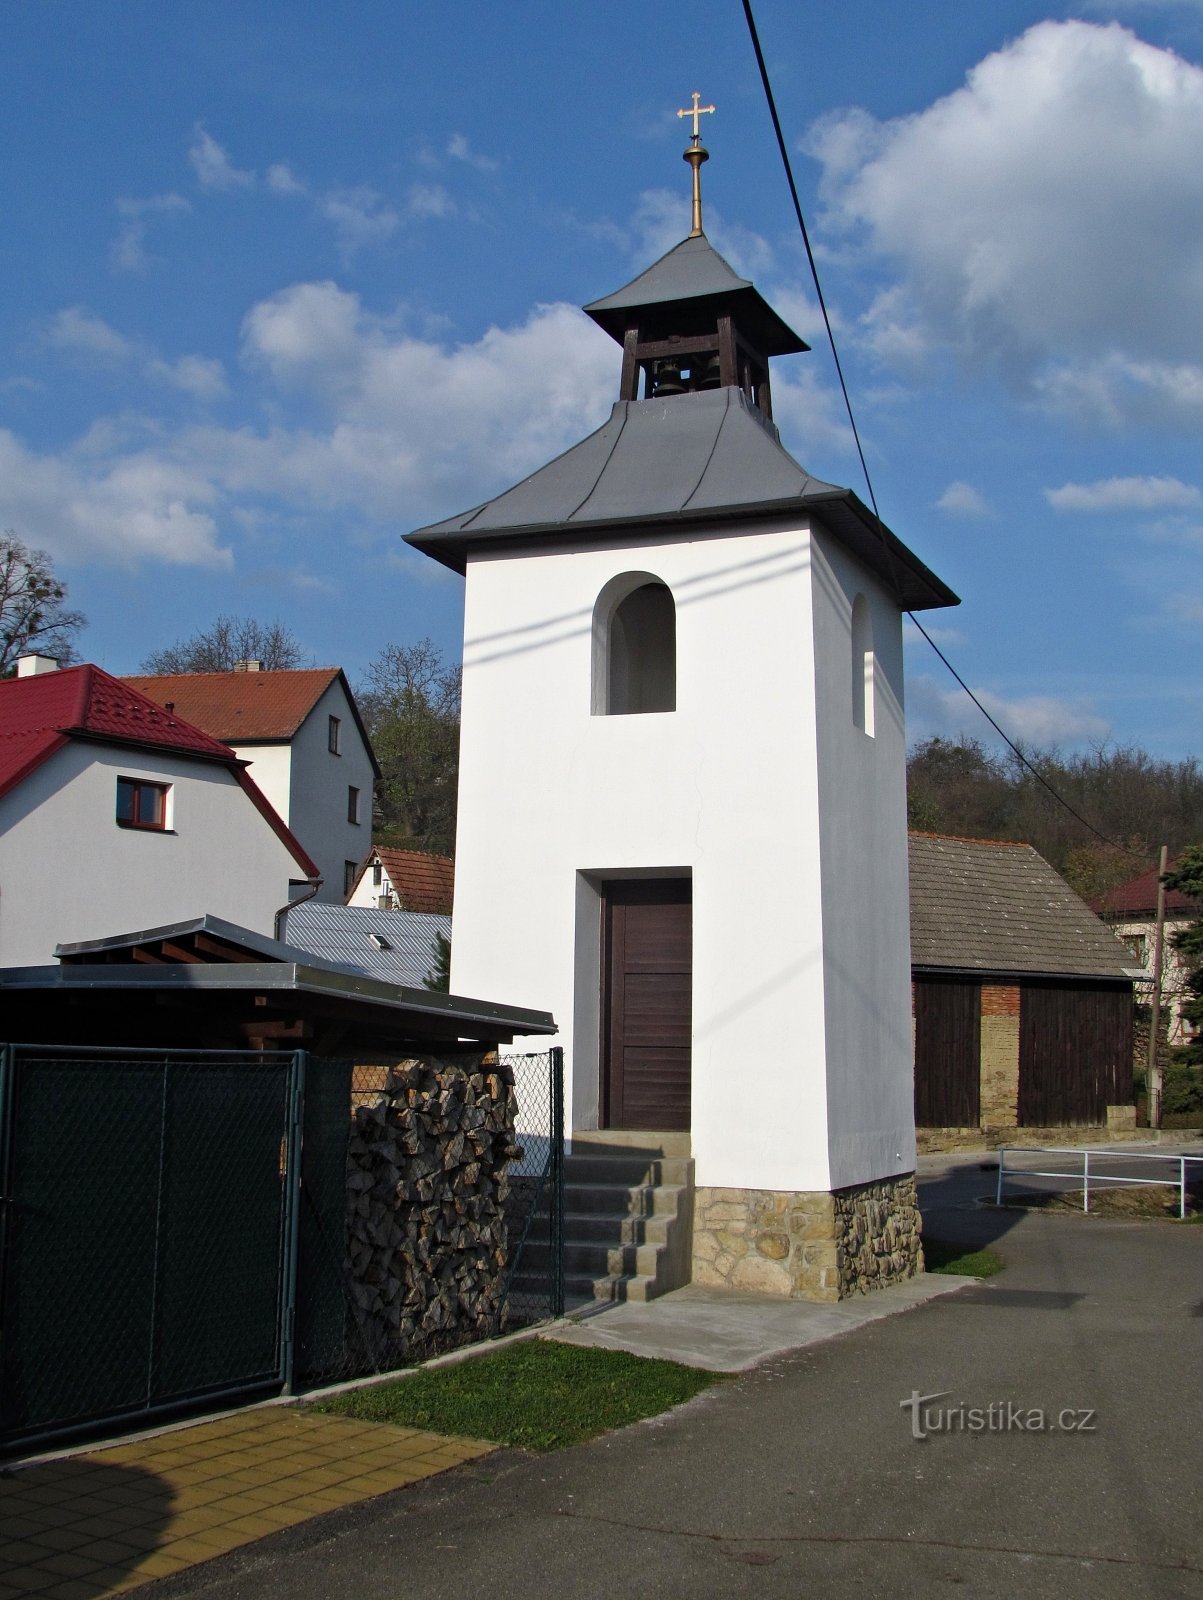 Ludkovice - monumente în centrul satului